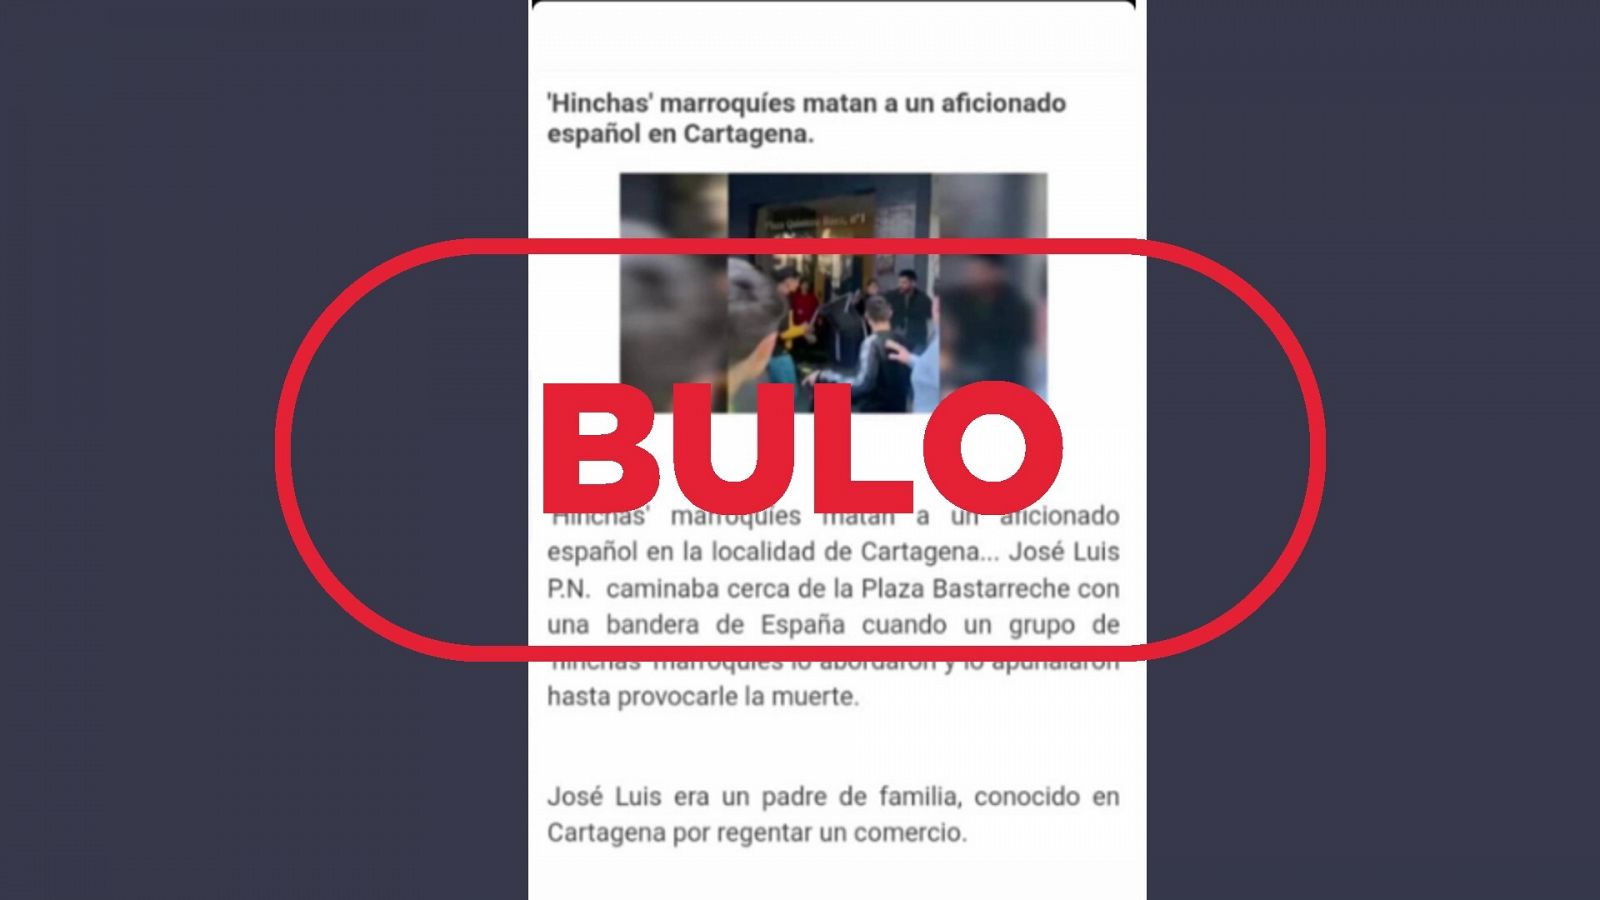 Mensaje que difunde el bulo sobre el asesinato de un aficionado español a manos de unos hinchas marroquíes, con el sello 'bulo' en rojo